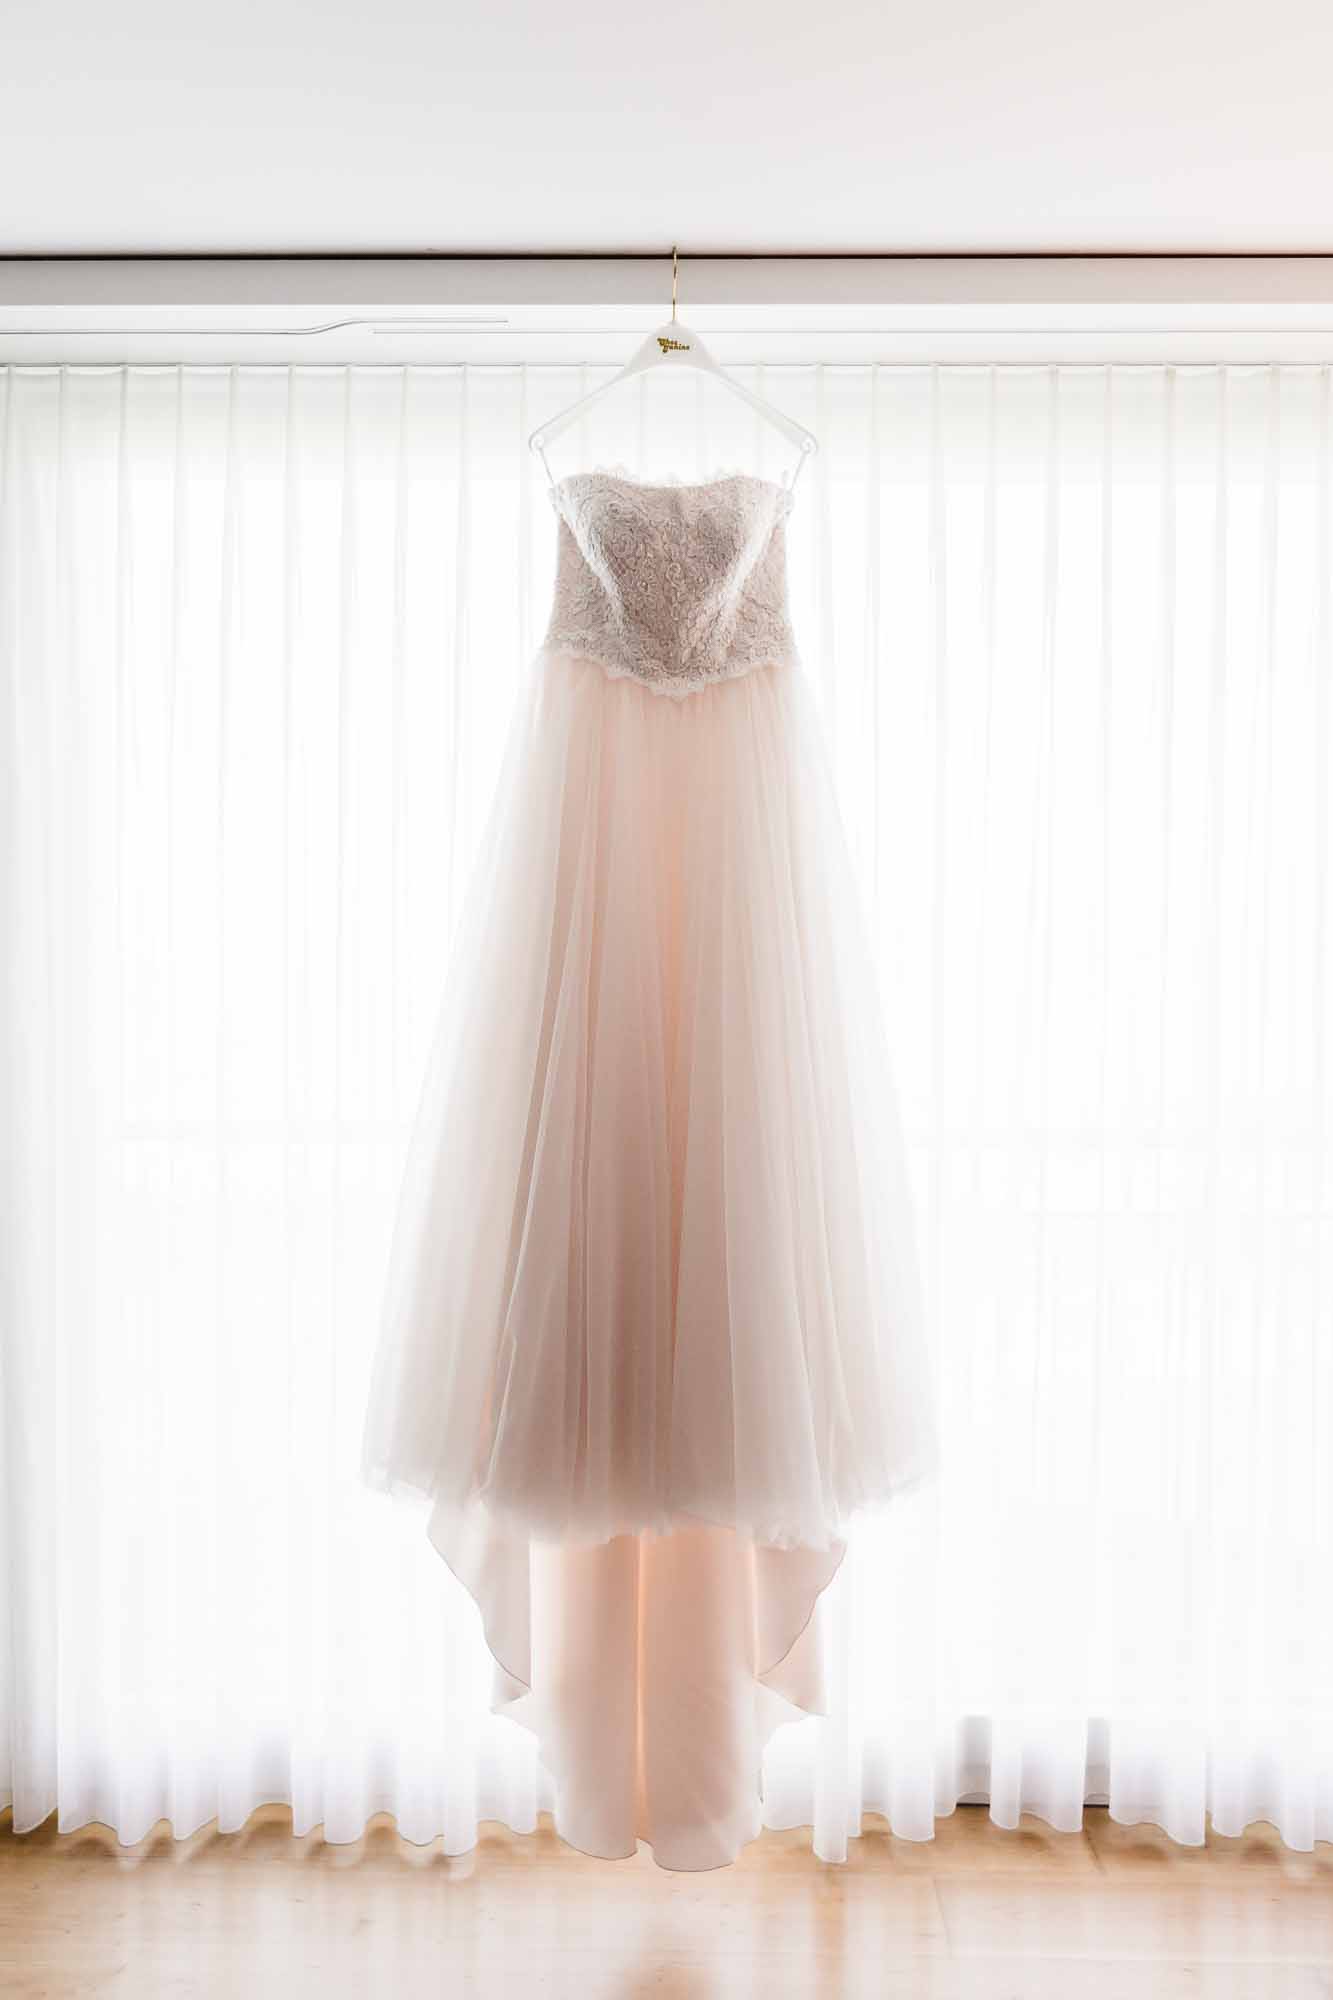 Brautkleid hängt vor Fenster